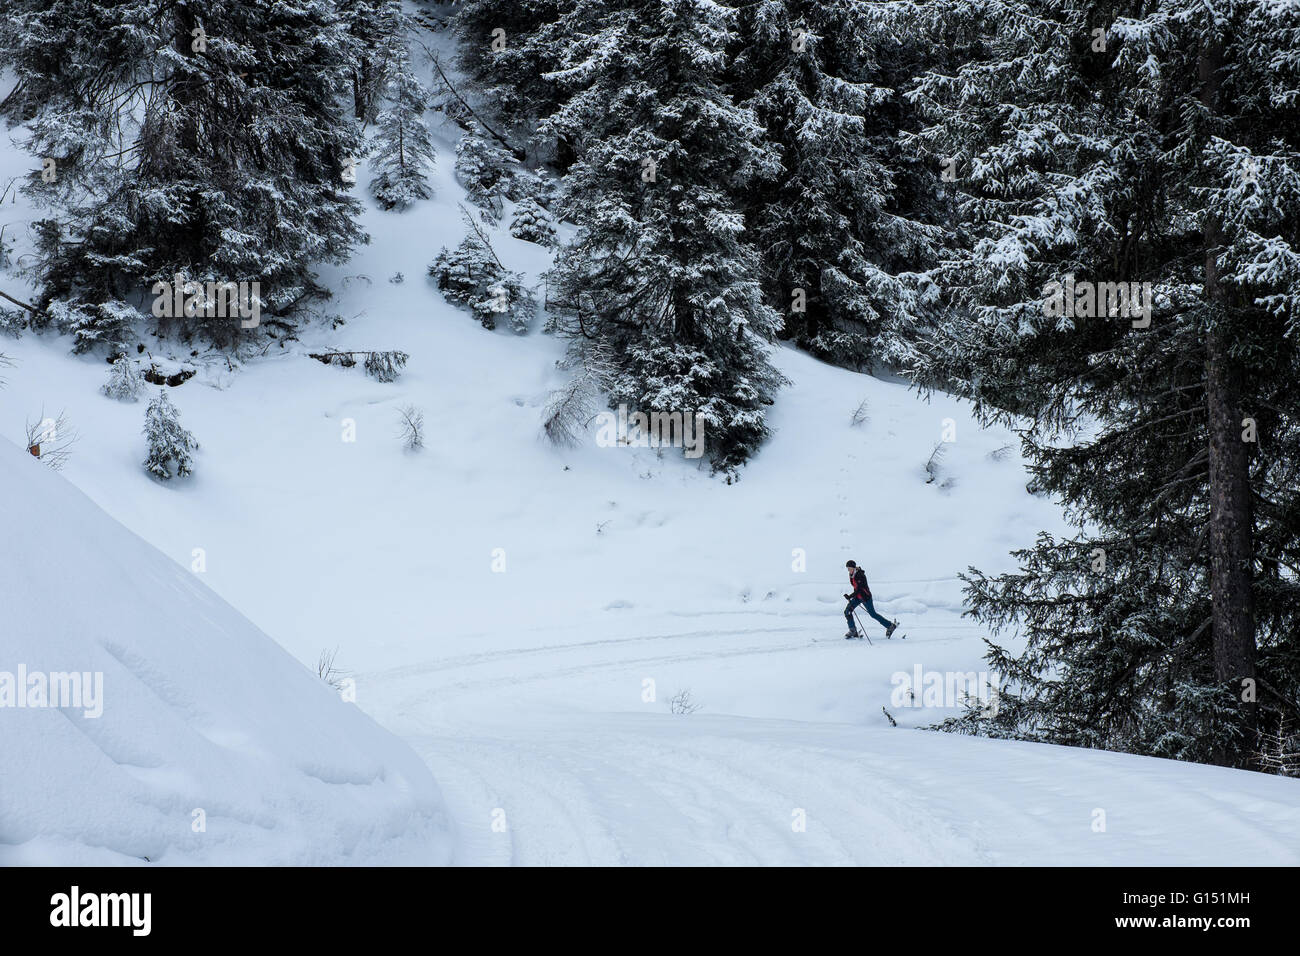 Ski touring in the Alps, Stubai, Austria Stock Photo